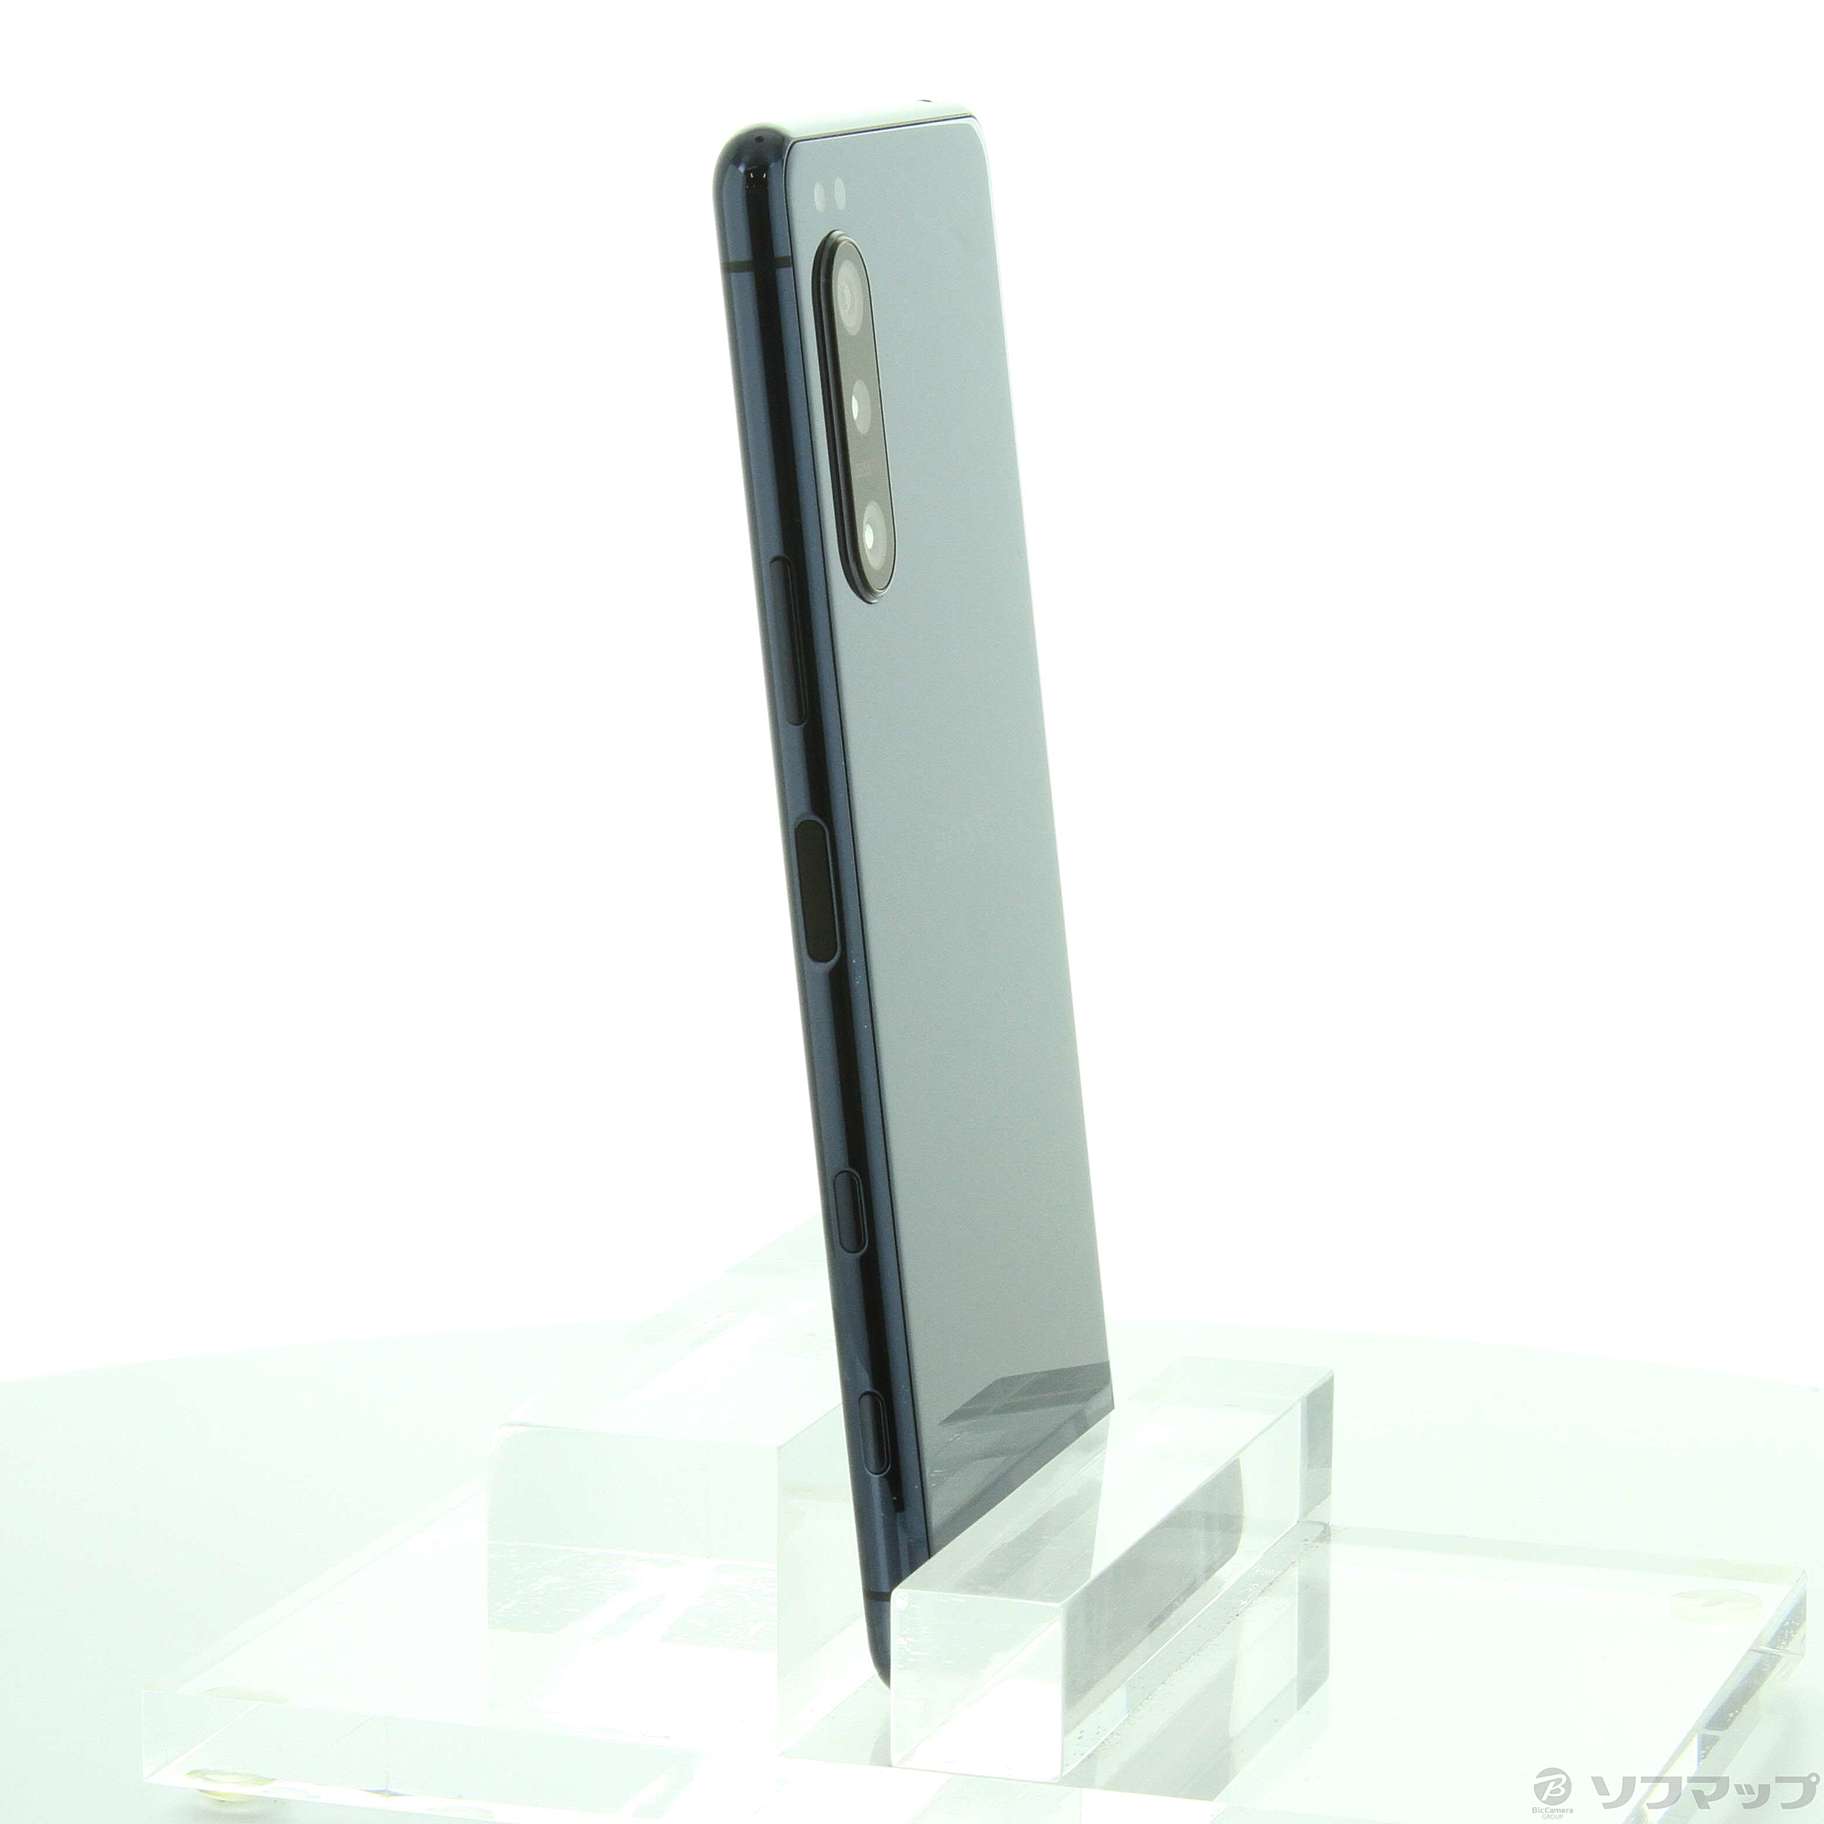 Xperia 5 II ブルー 128 GB au SIMロック解除済み - スマートフォン本体